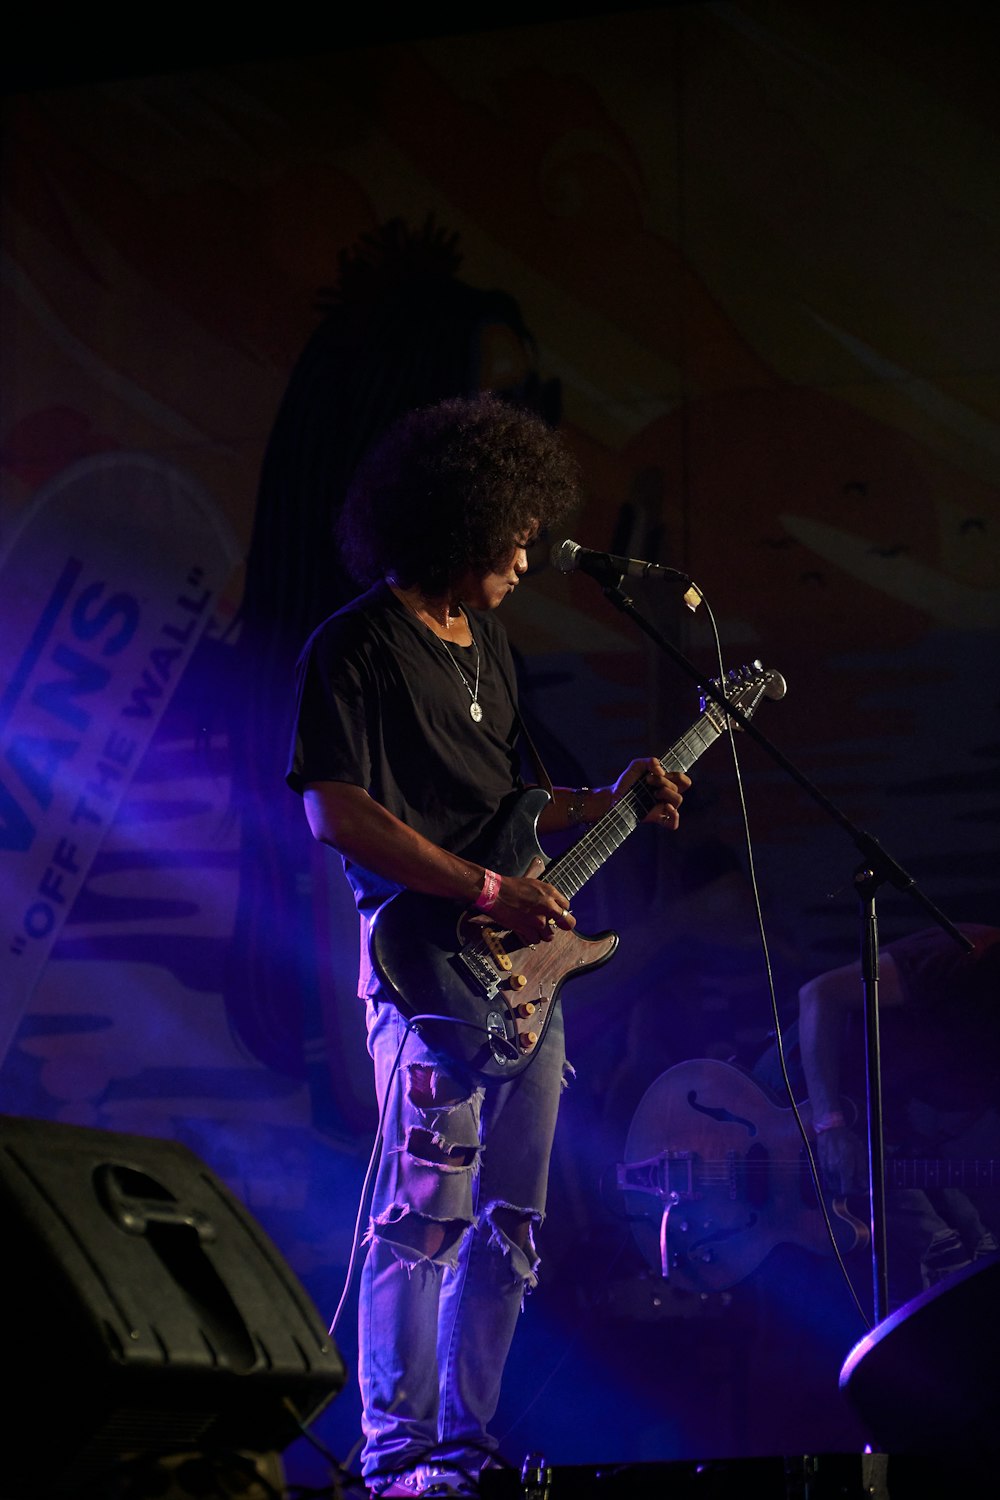 Un hombre parado en un escenario tocando una guitarra